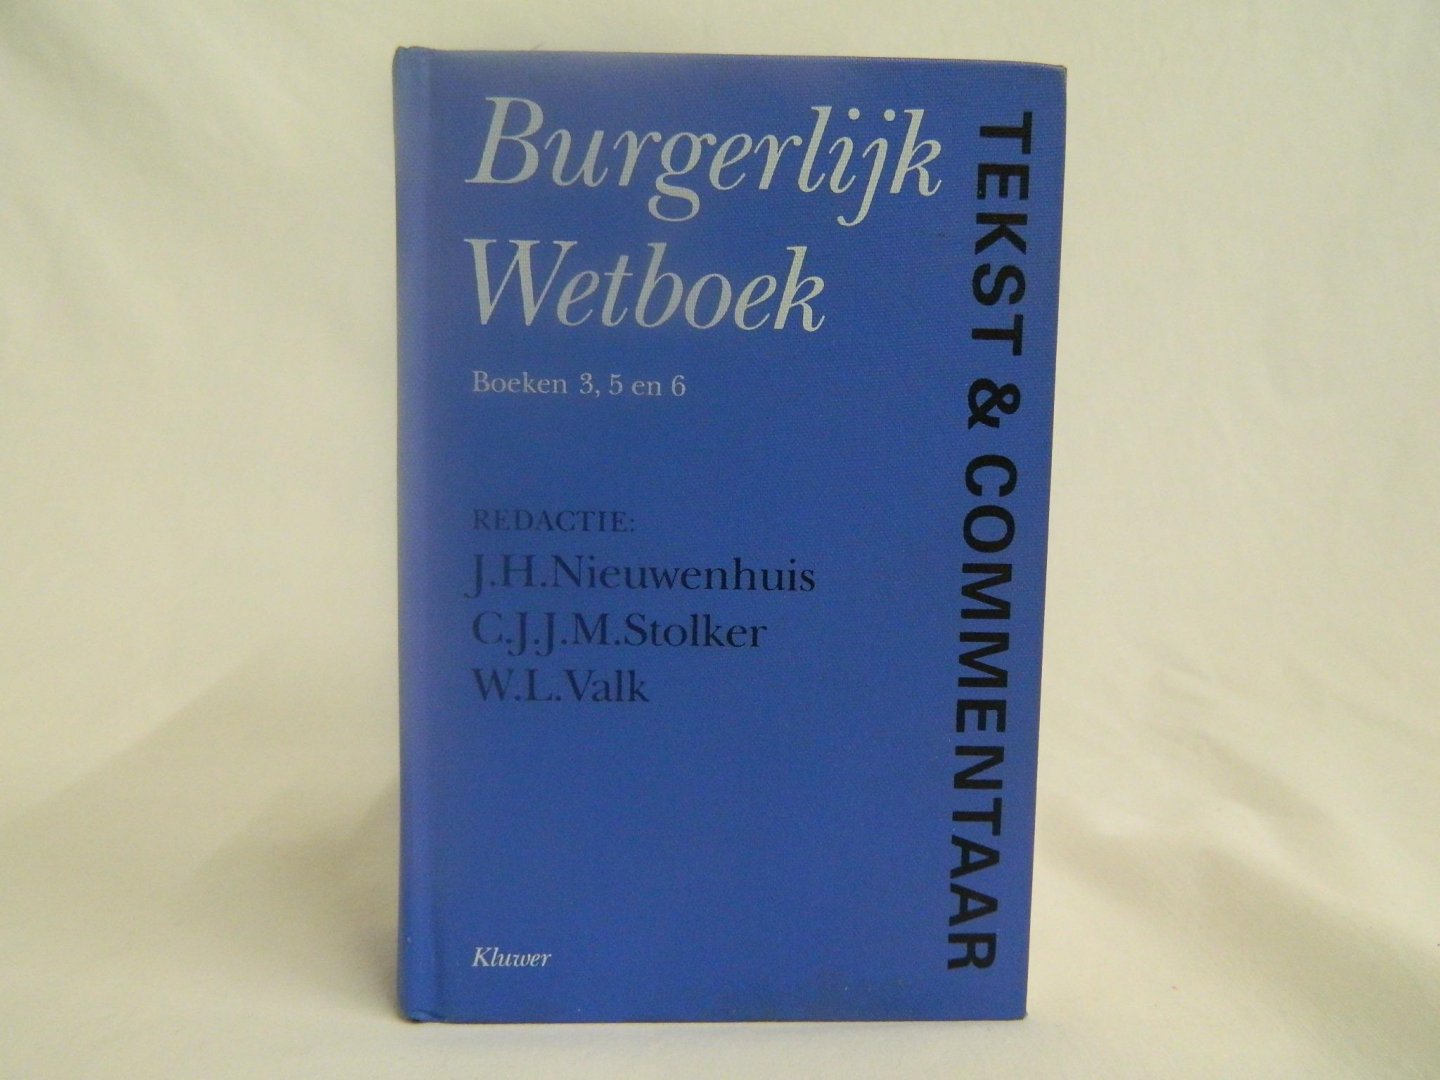 Nieuwenhuis, J.H. / Stolker, C.J.J.M. / Valk, W.L. - Burgerlijk wetboek: boeken 3,5 en 6